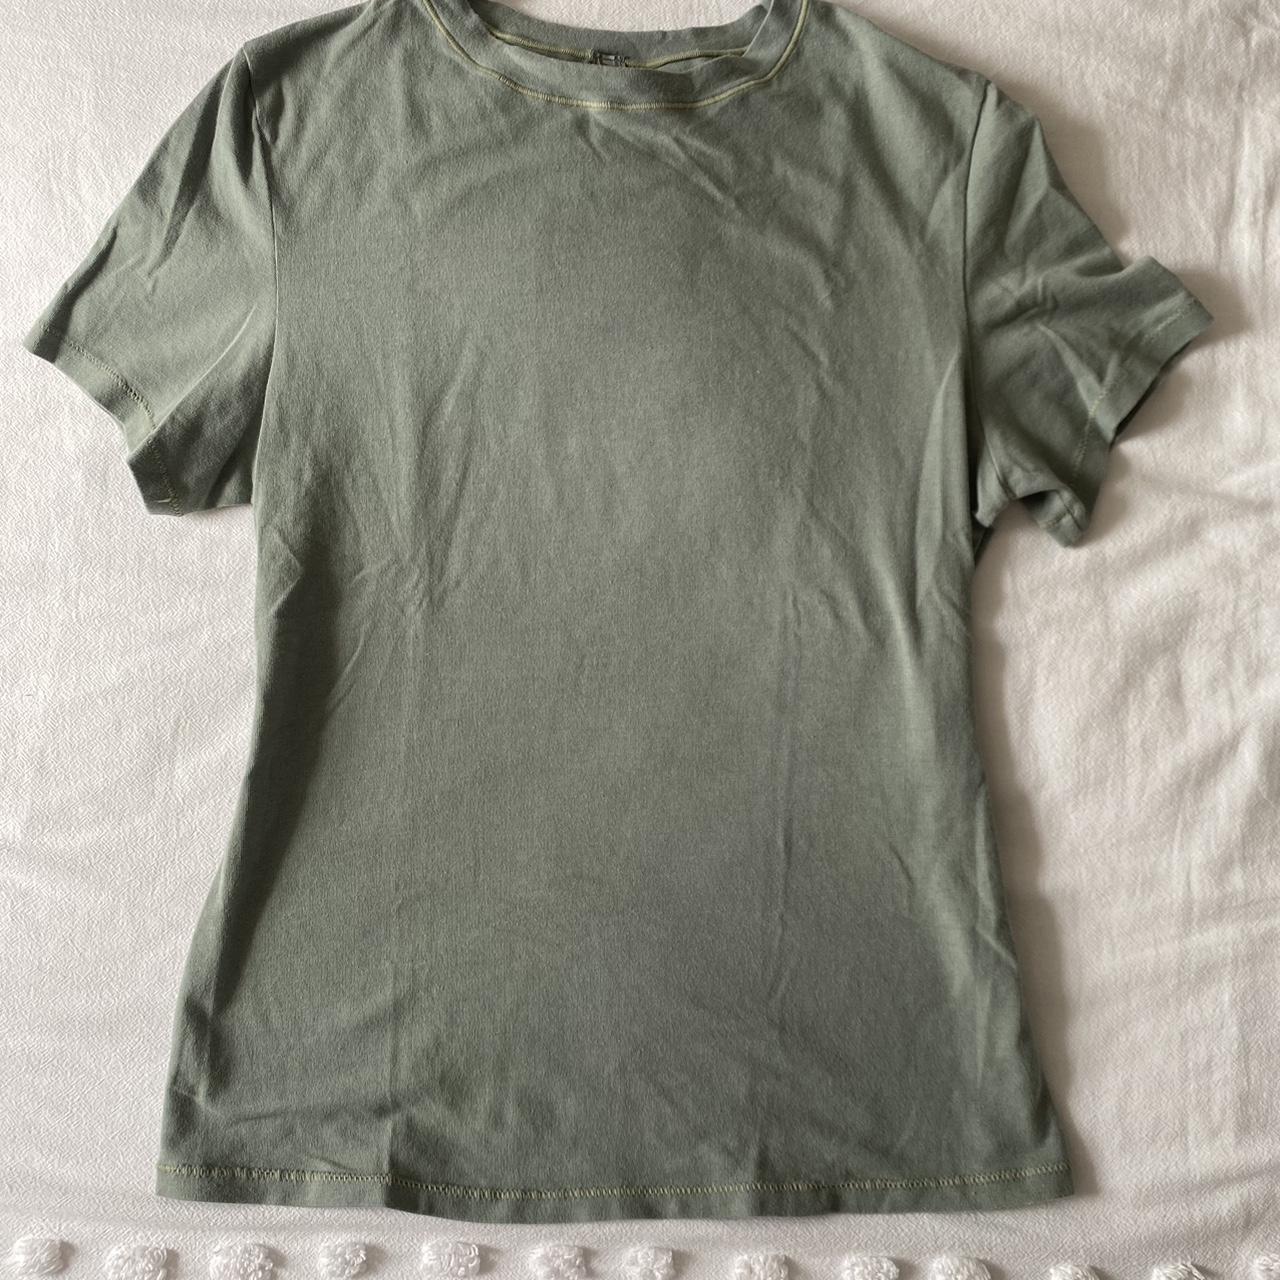 Skims Women's Green T-shirt | Depop